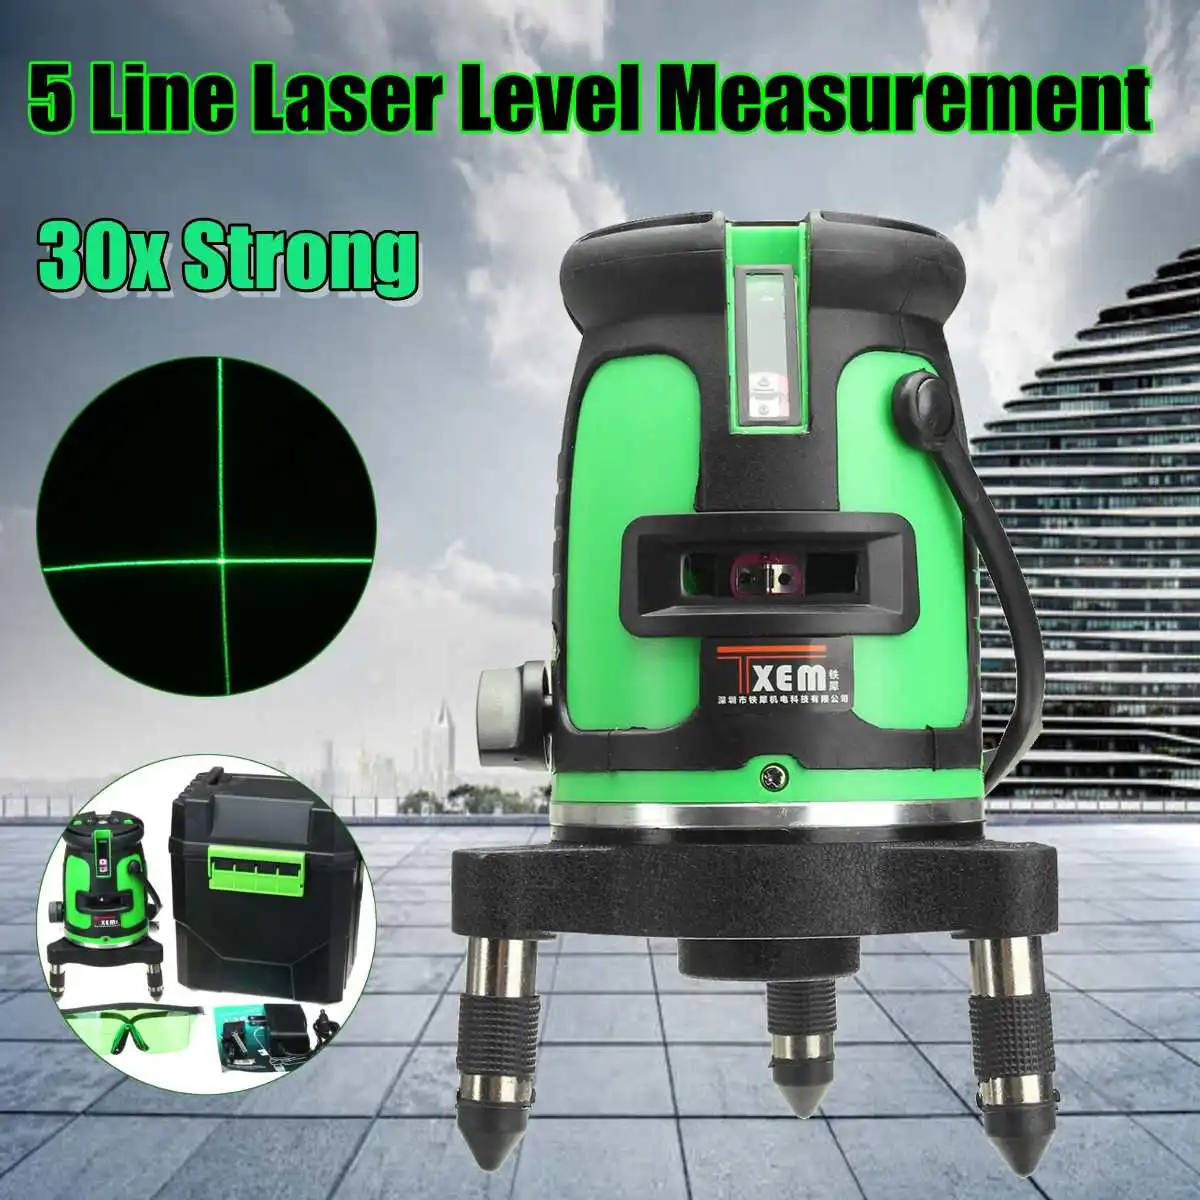 5 линии 3D лазерный выравниватель 360 градусов наливные Вертикальные Горизонтальные Уровень Крест Мощный лазерный луч Цвет Зеленый